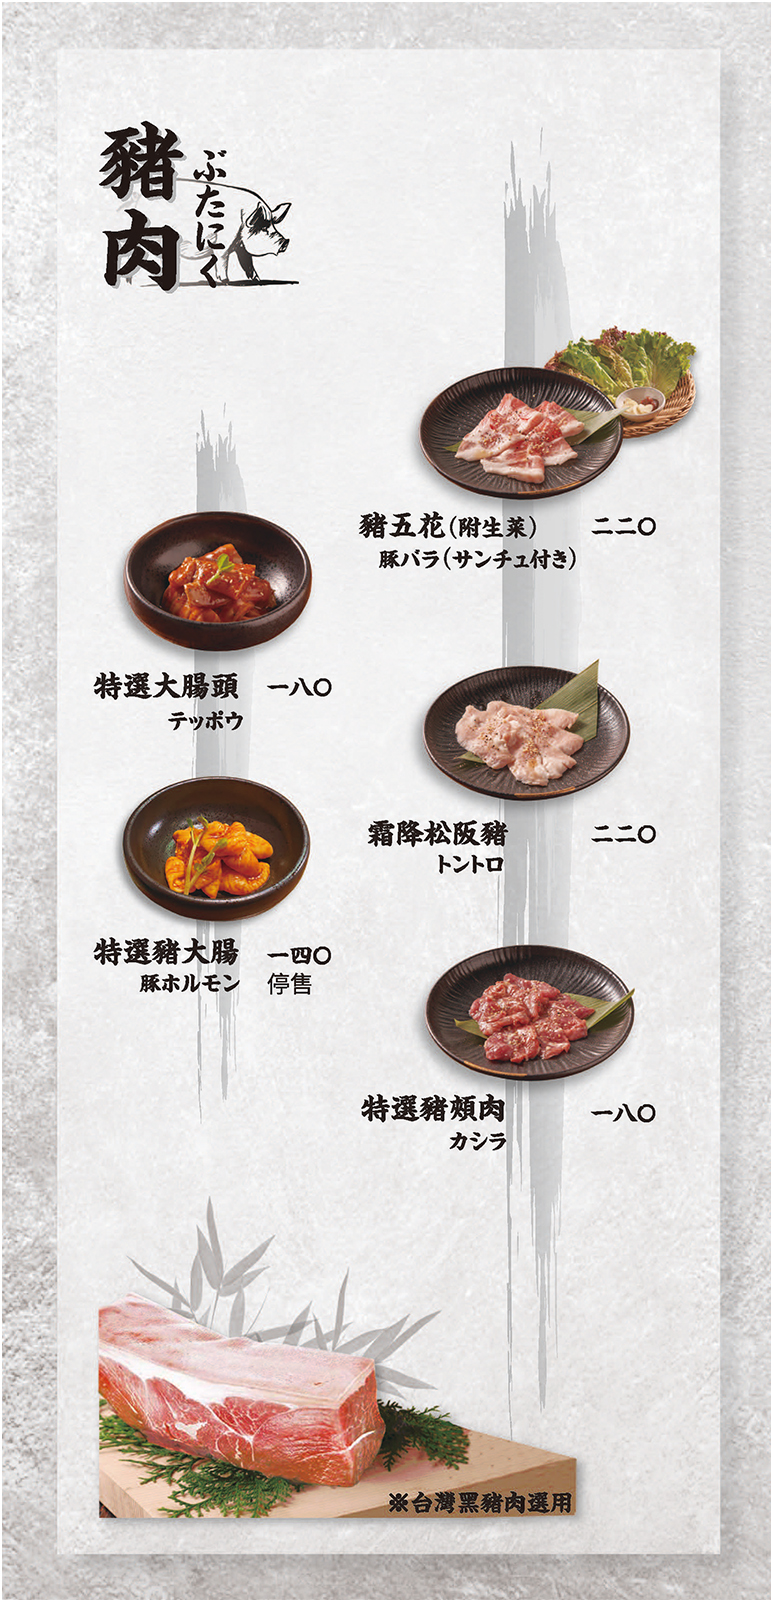 上吉燒肉-菜單-牛內臟、雞肉、豬肉